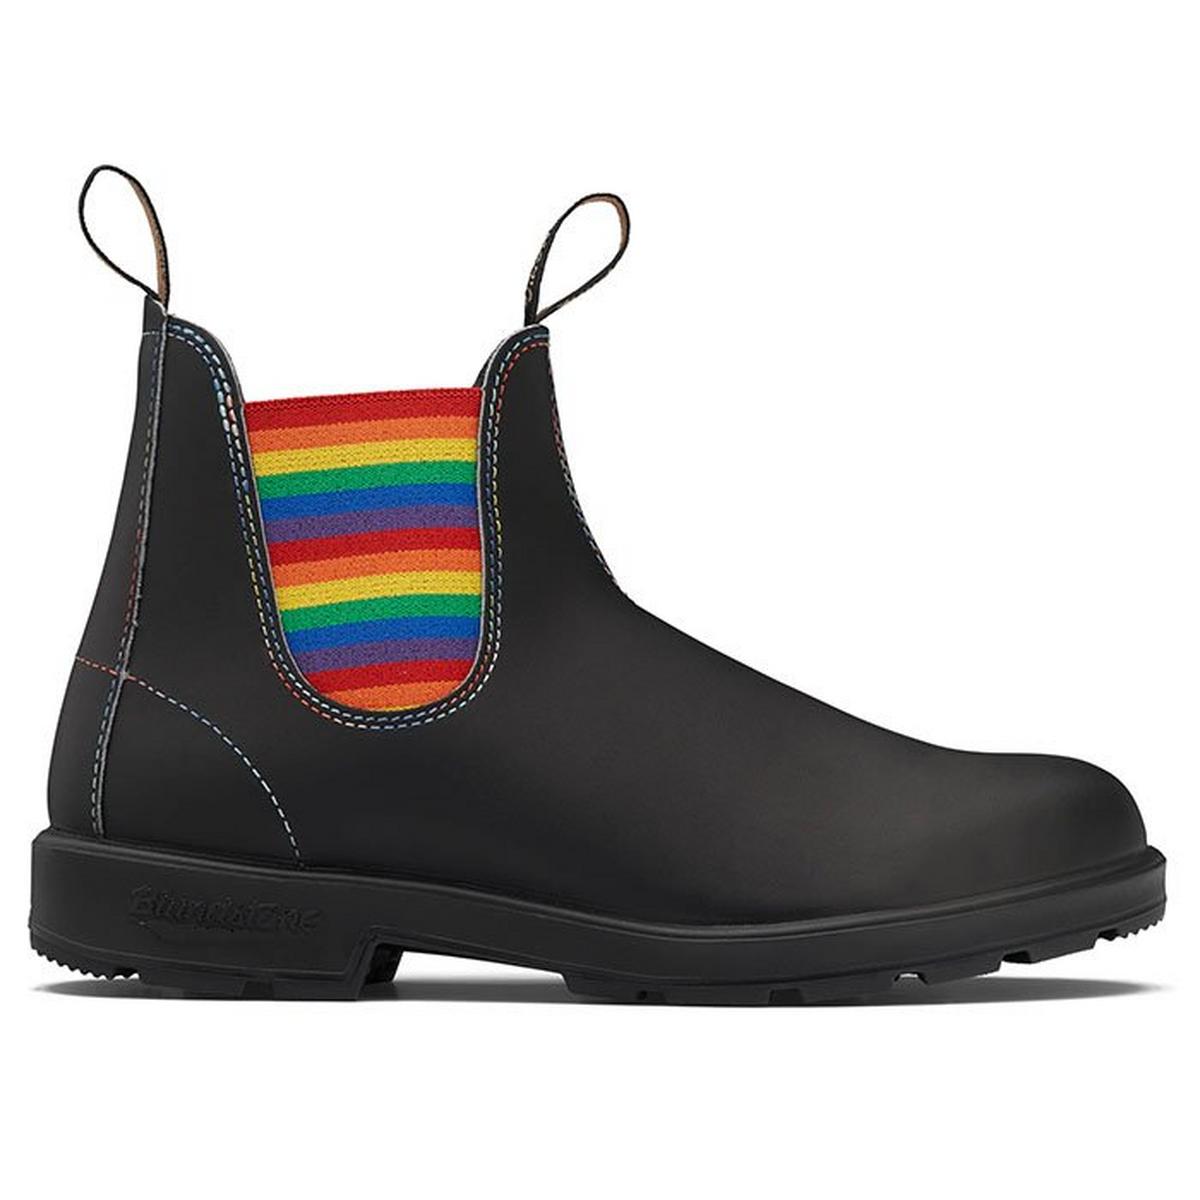 #2105 Original Boot in Black with Rainbow Elastic